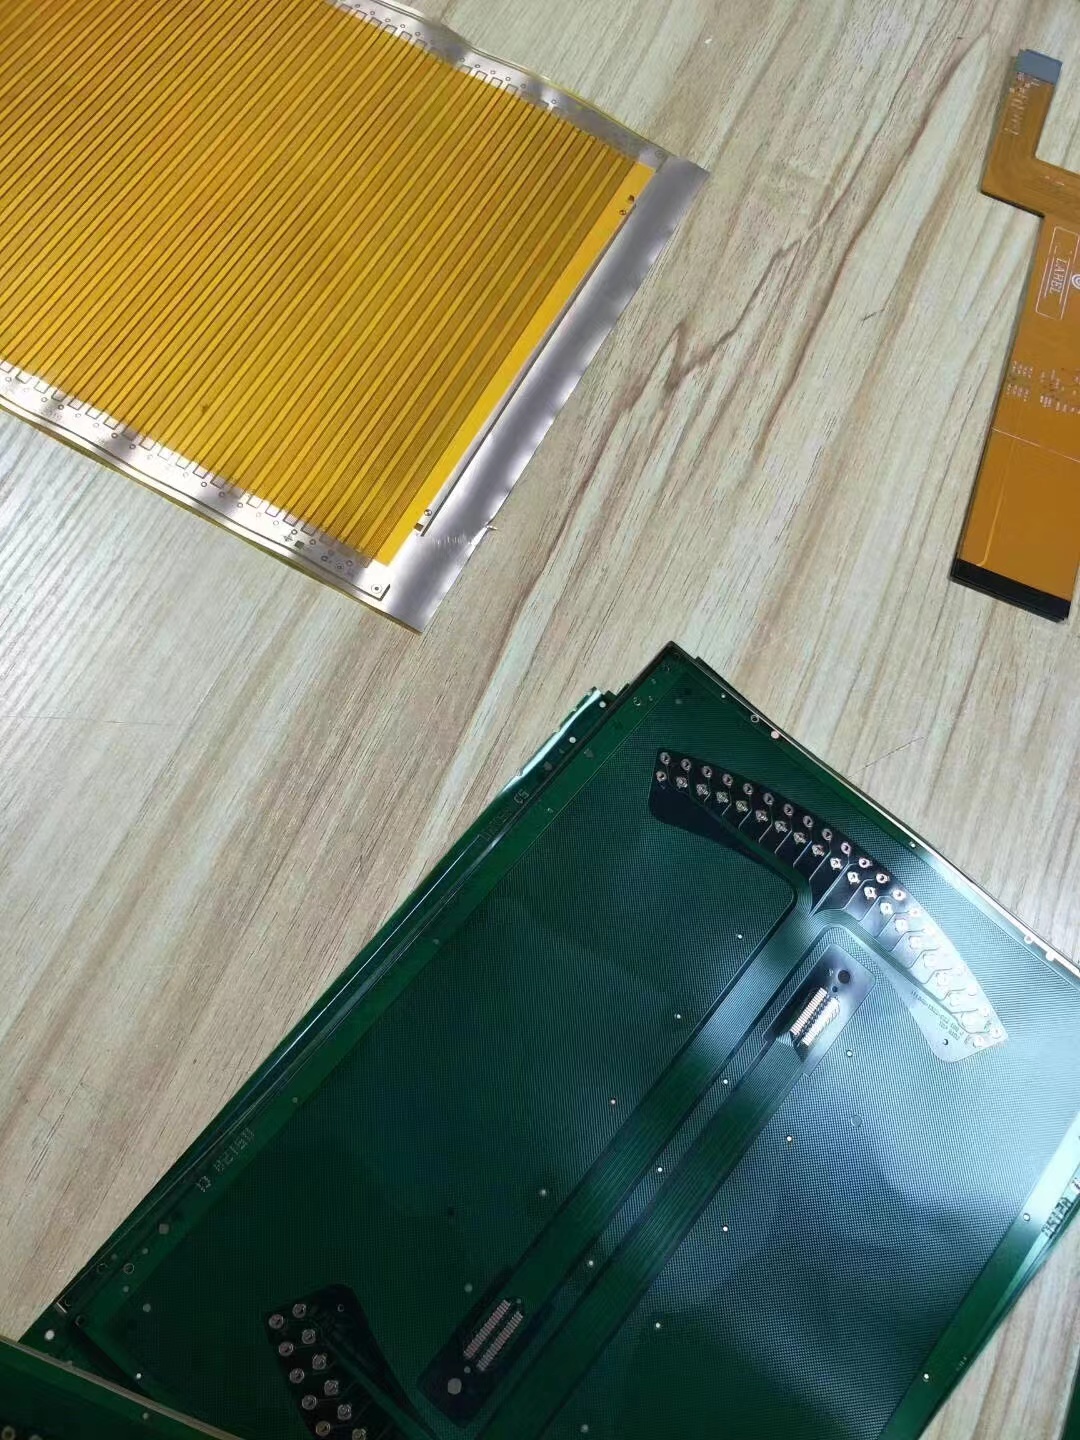 ,广州排线电路板生产厂家,广州排线电路板多少钱,广州排线电路板价格  pcb电路板抄板